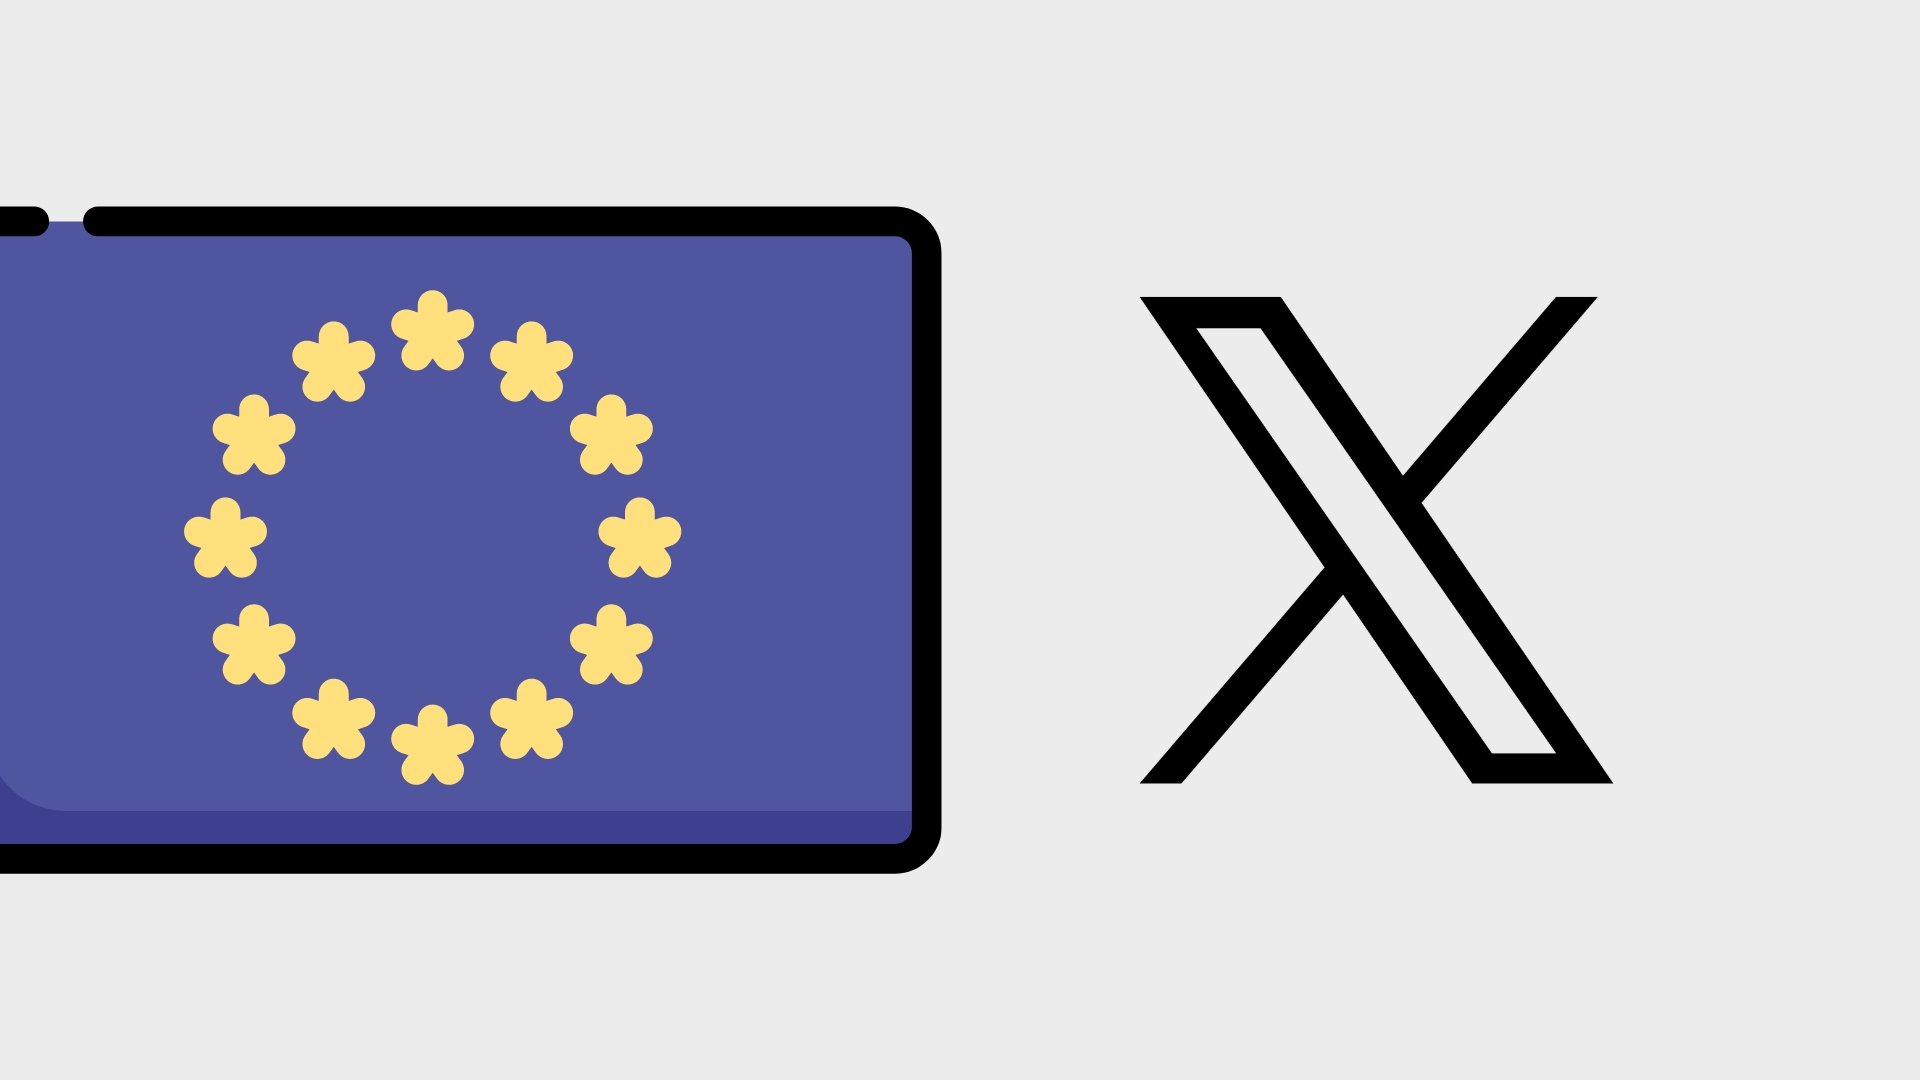 Bandeira europeia com logo da X